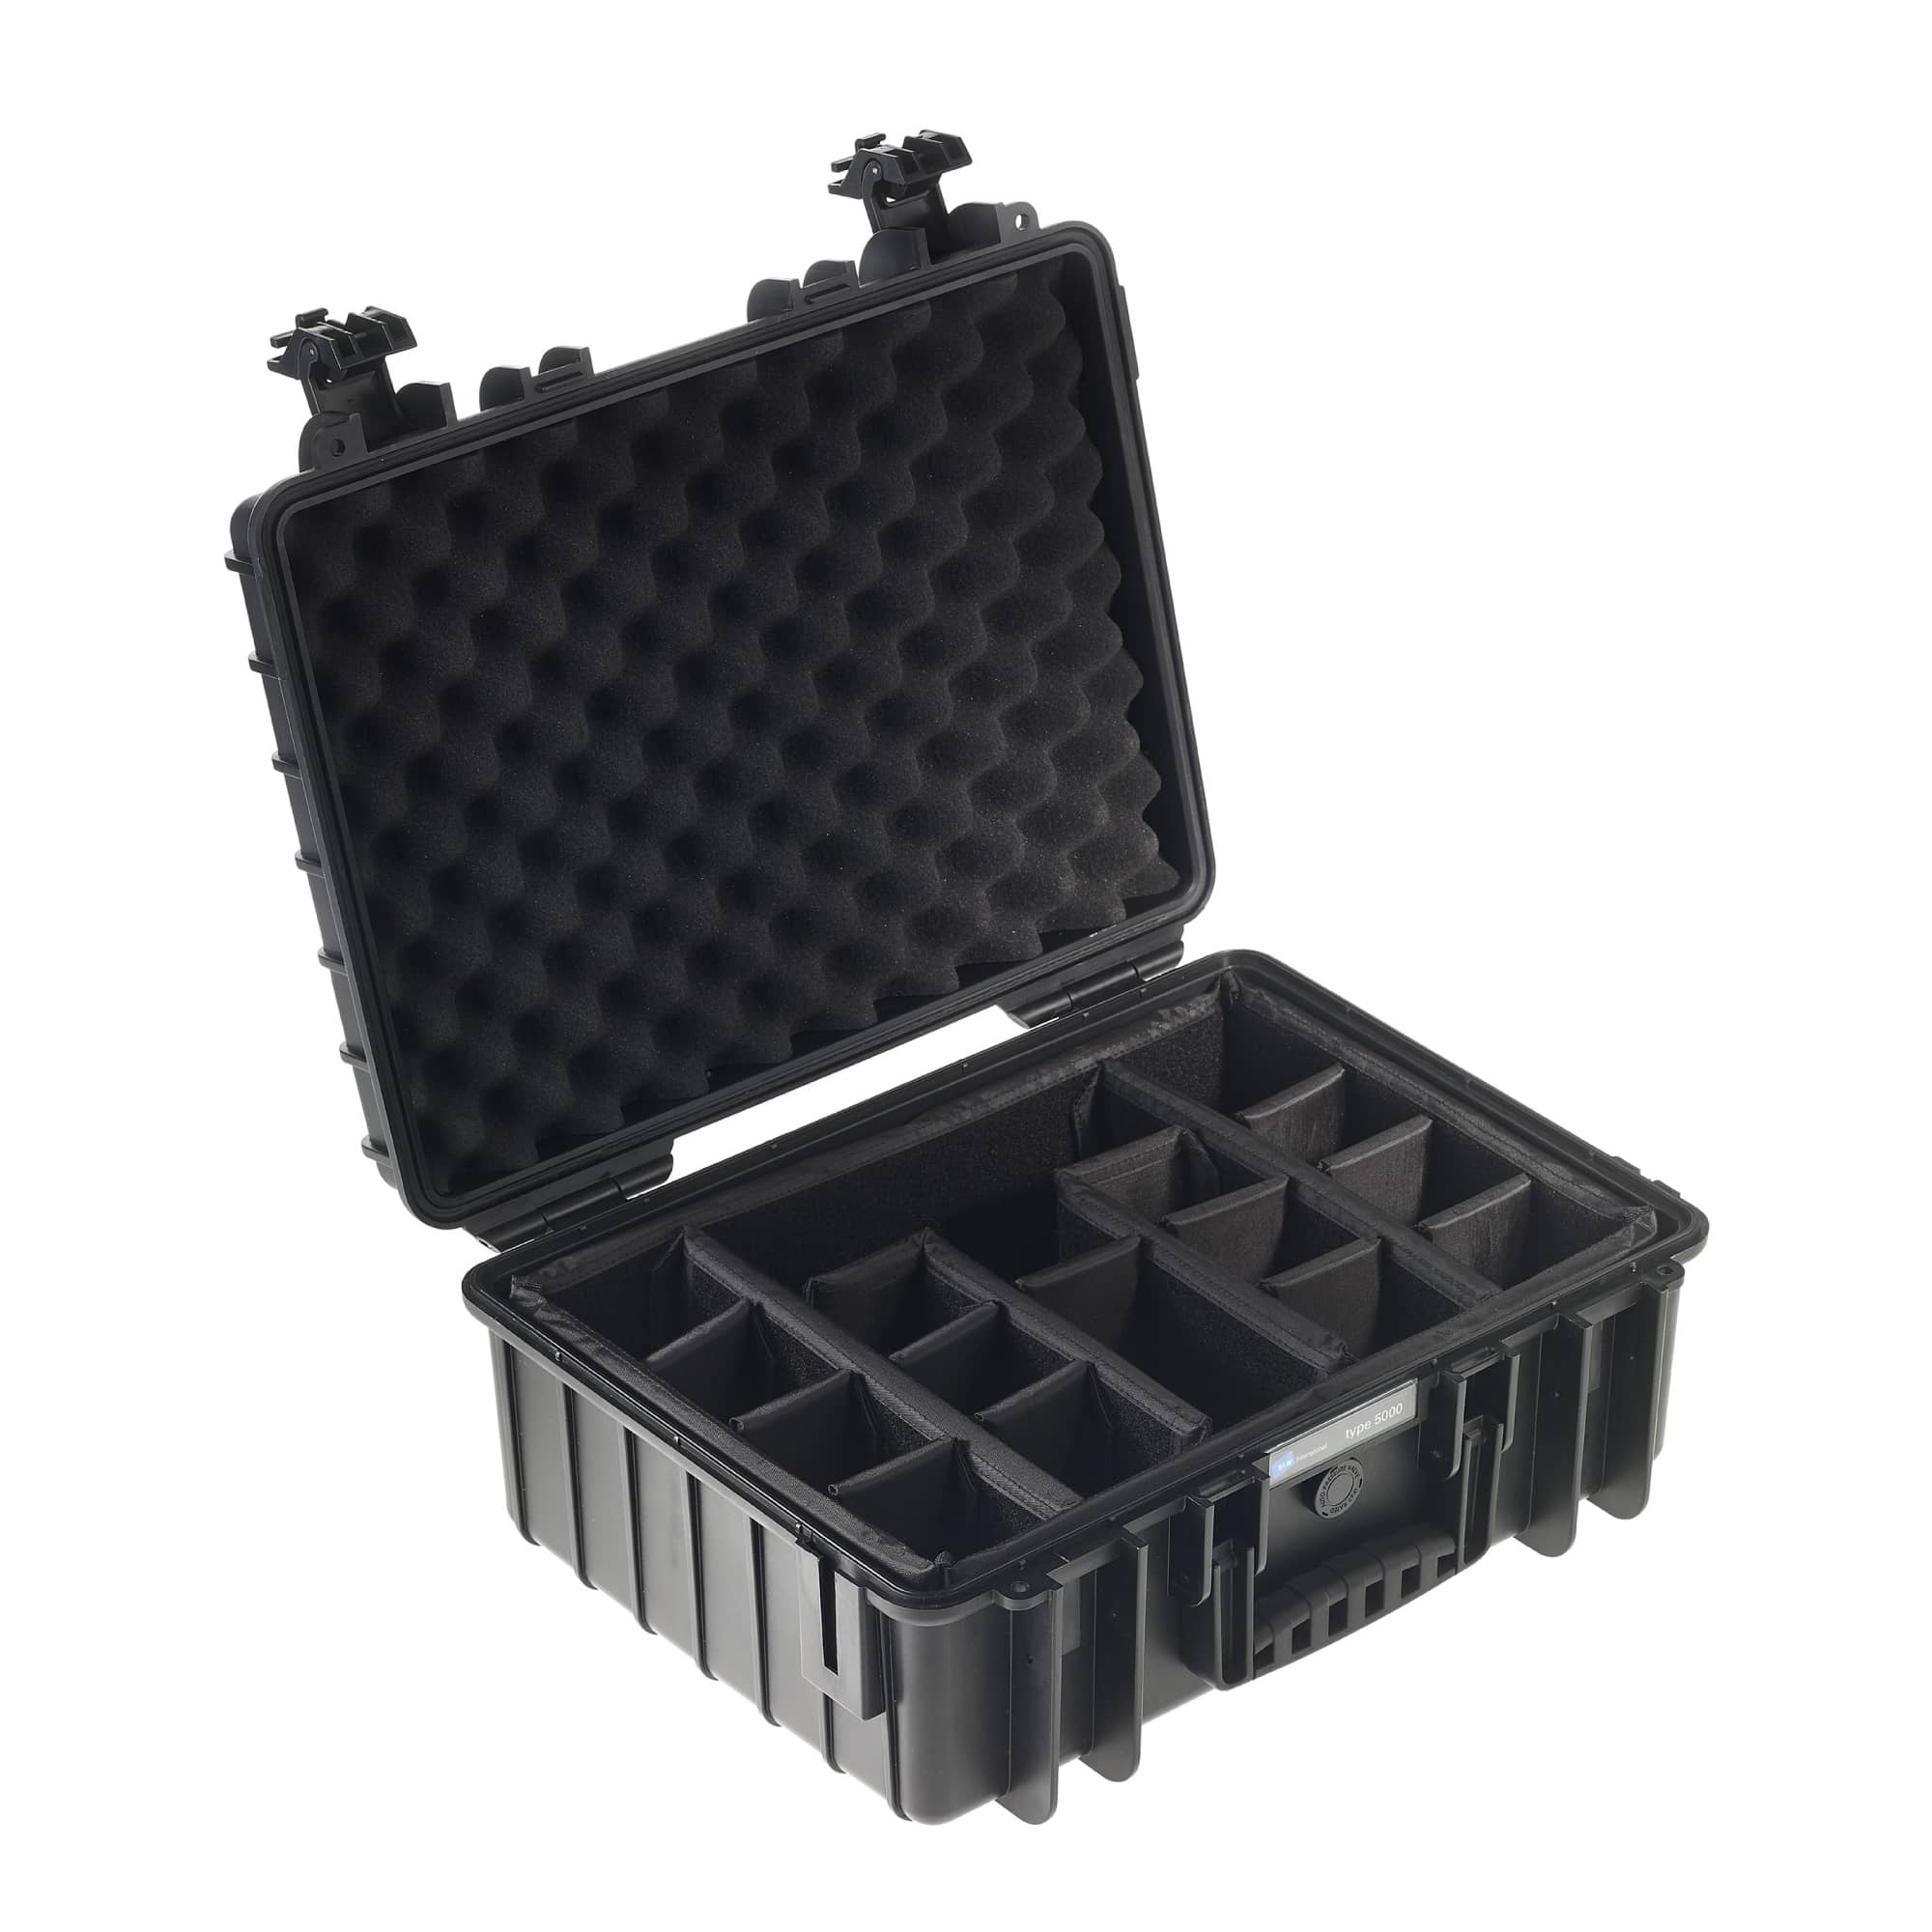 B&W Outdoor Case Typ 5000 schwarz mit variabler Facheinteilung (RPD)